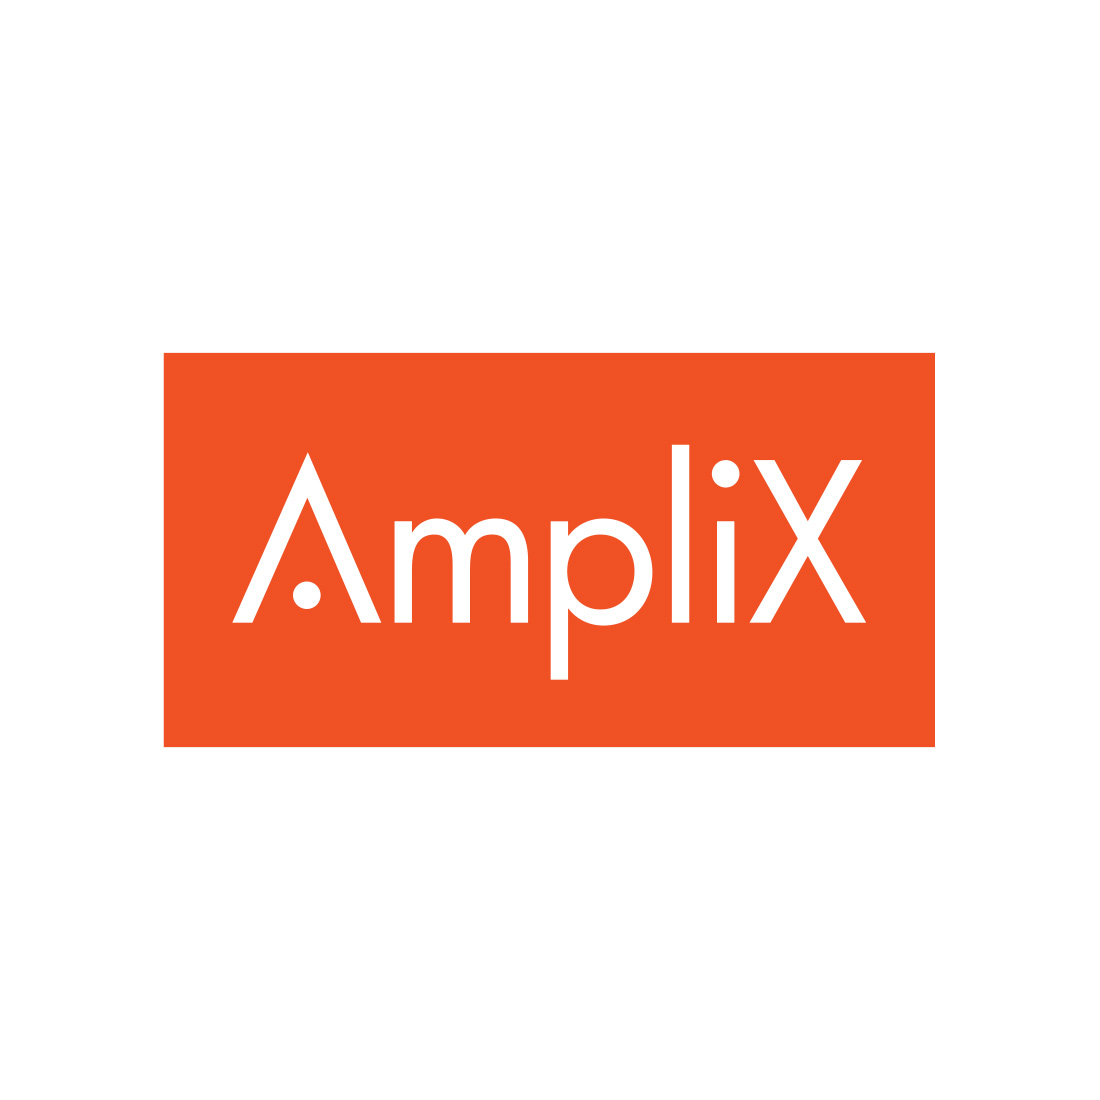 Amplix